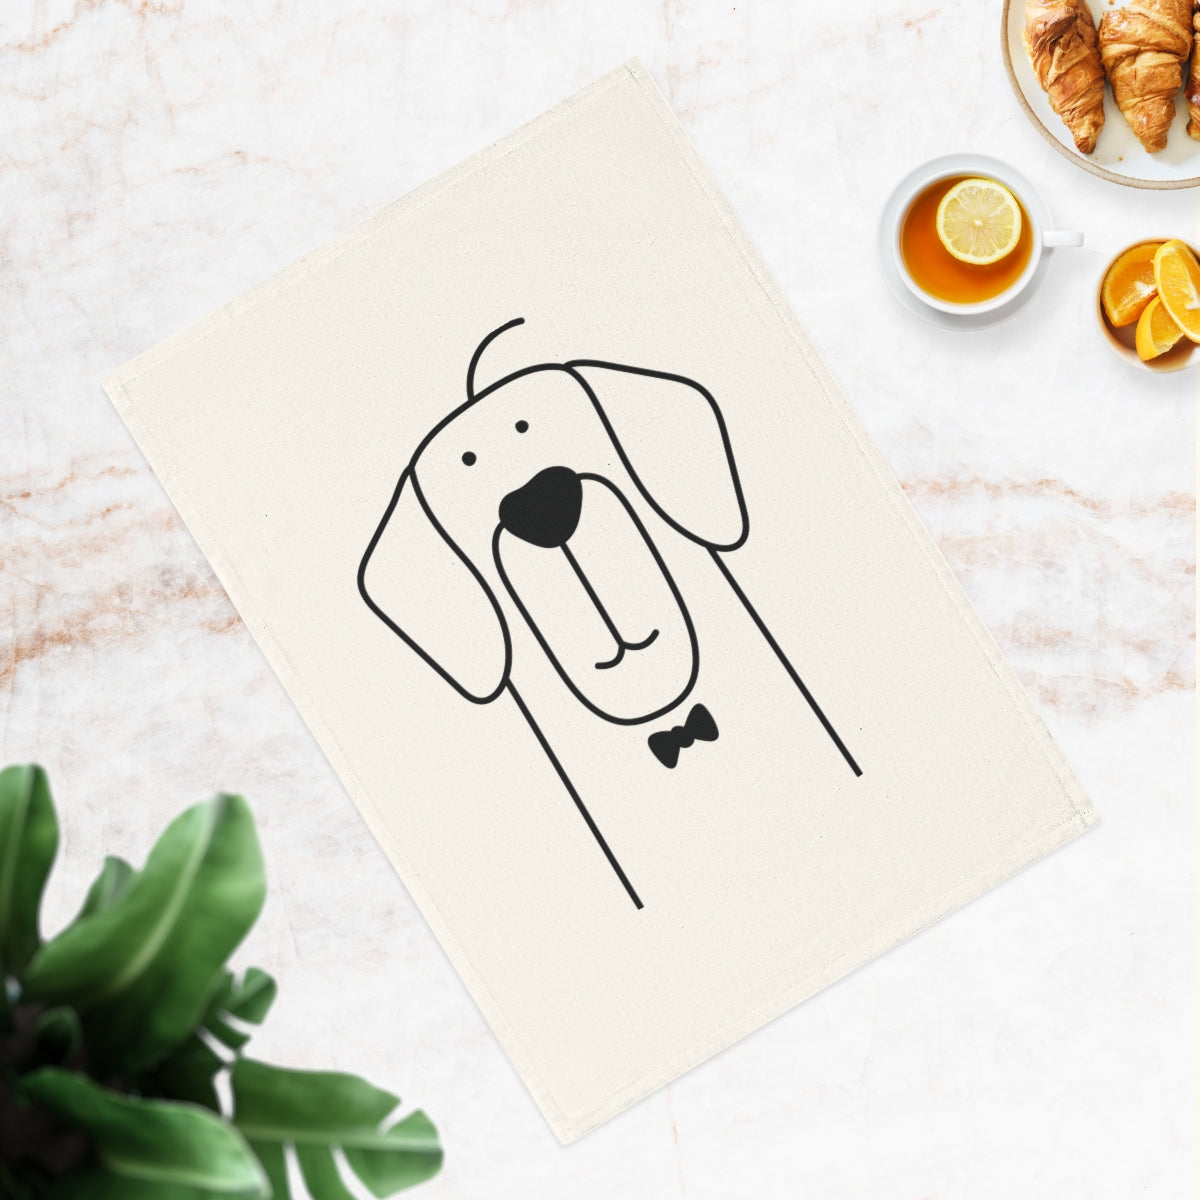 Retriever Hund Baumwolle Geschirrtuch, 50 x 70 cm, Bio-Baumwolle, umweltfreundliches Hunde-Küchentuch, Badezimmerhandtuch mit Welpen